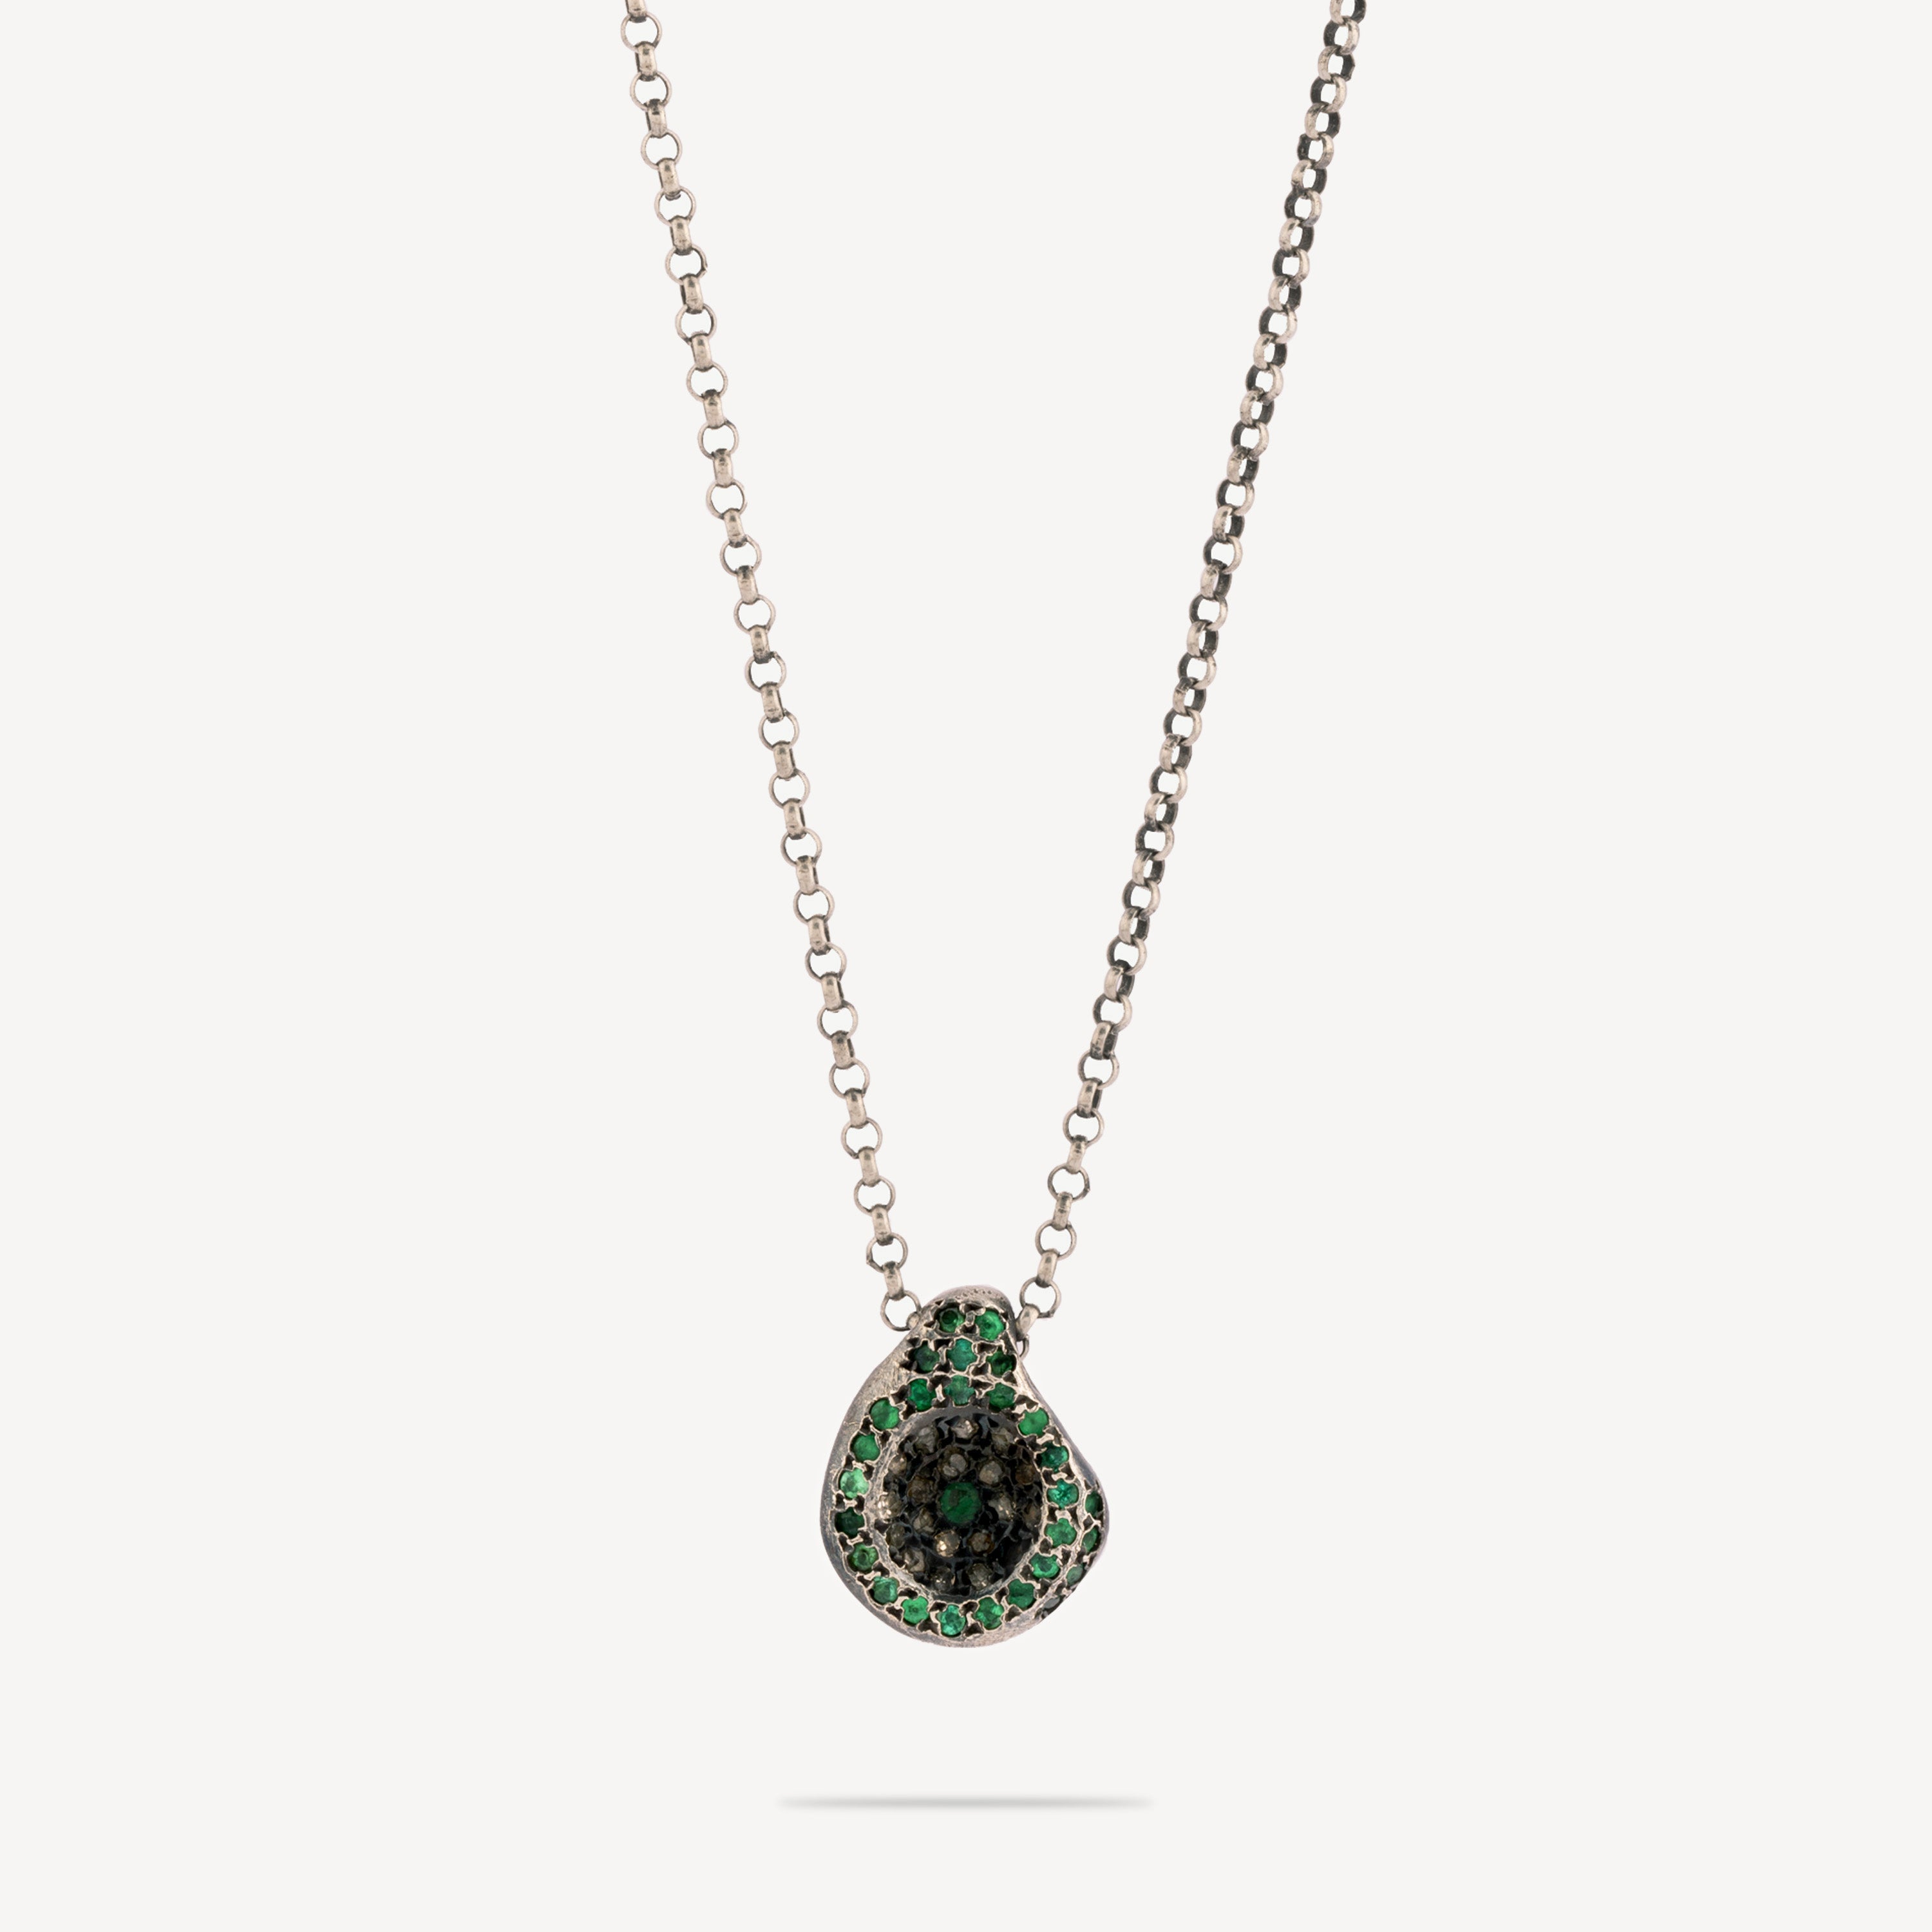 Emerald avocado necklace